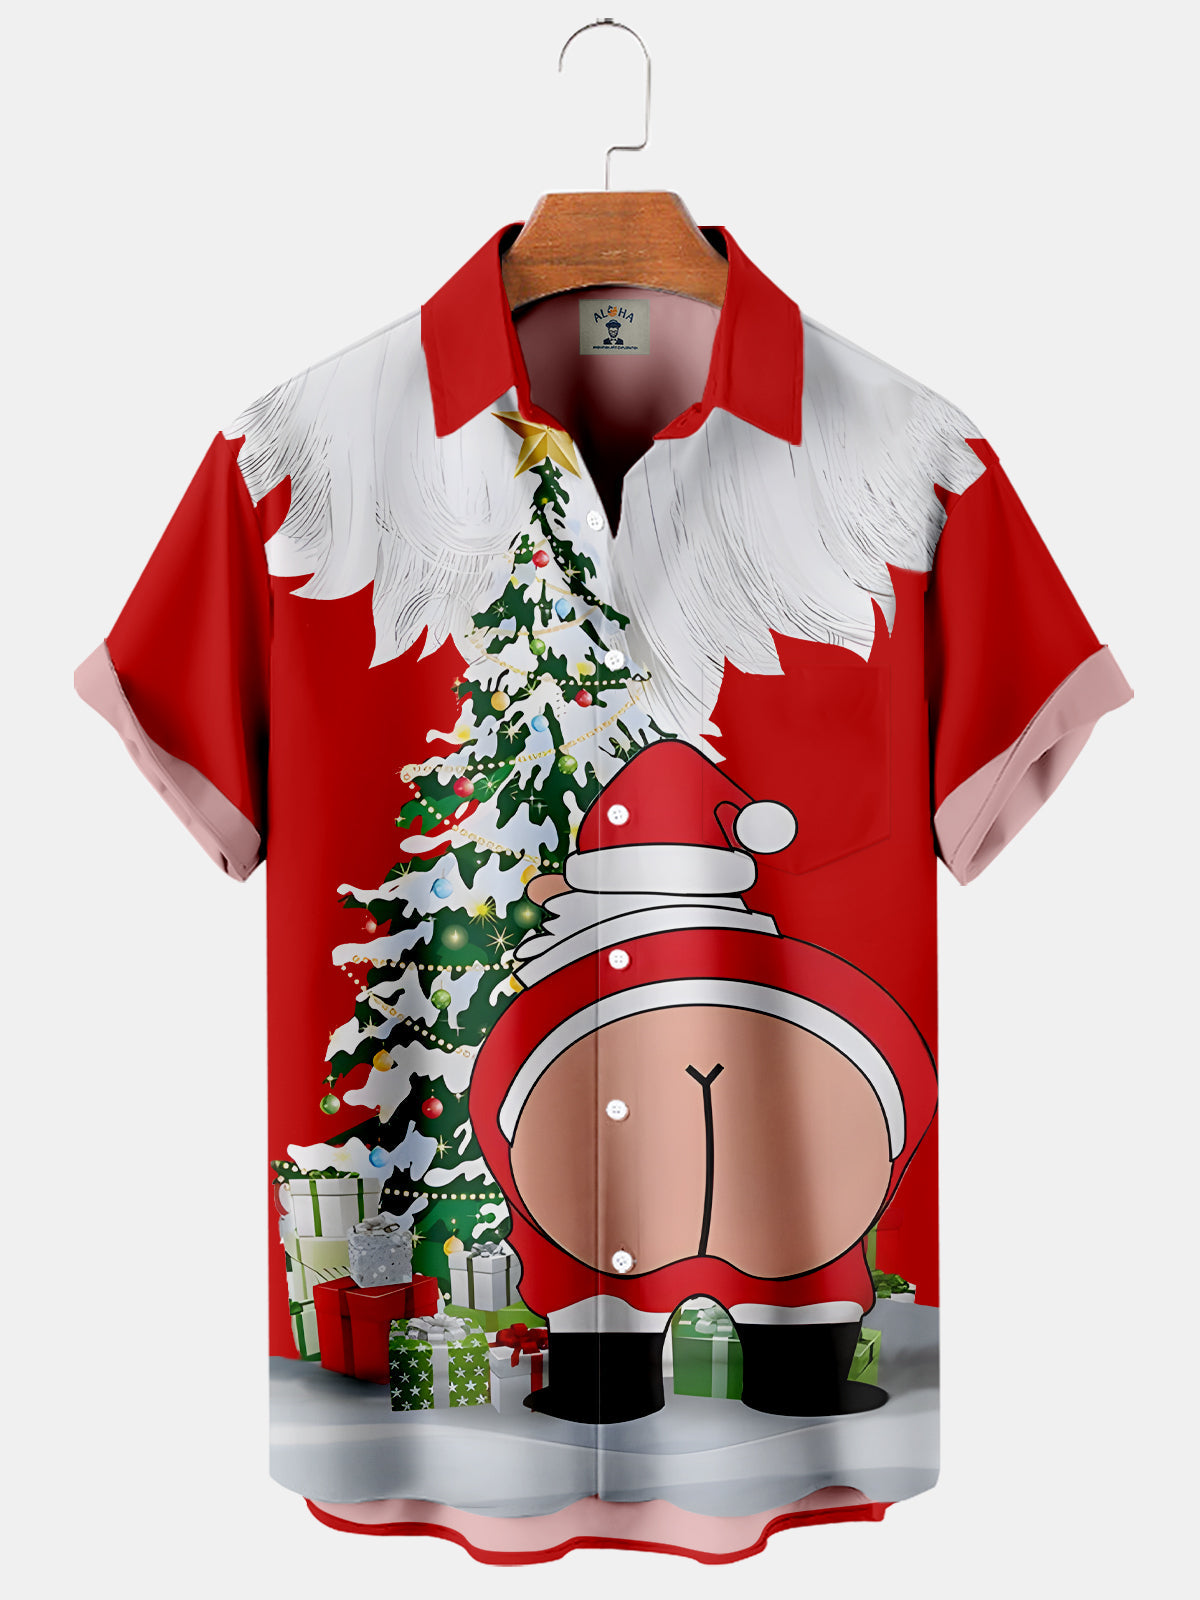 Funny Christmas Santa Claus And His Gifts On The Xmas Tree - Hawaiian Shirt